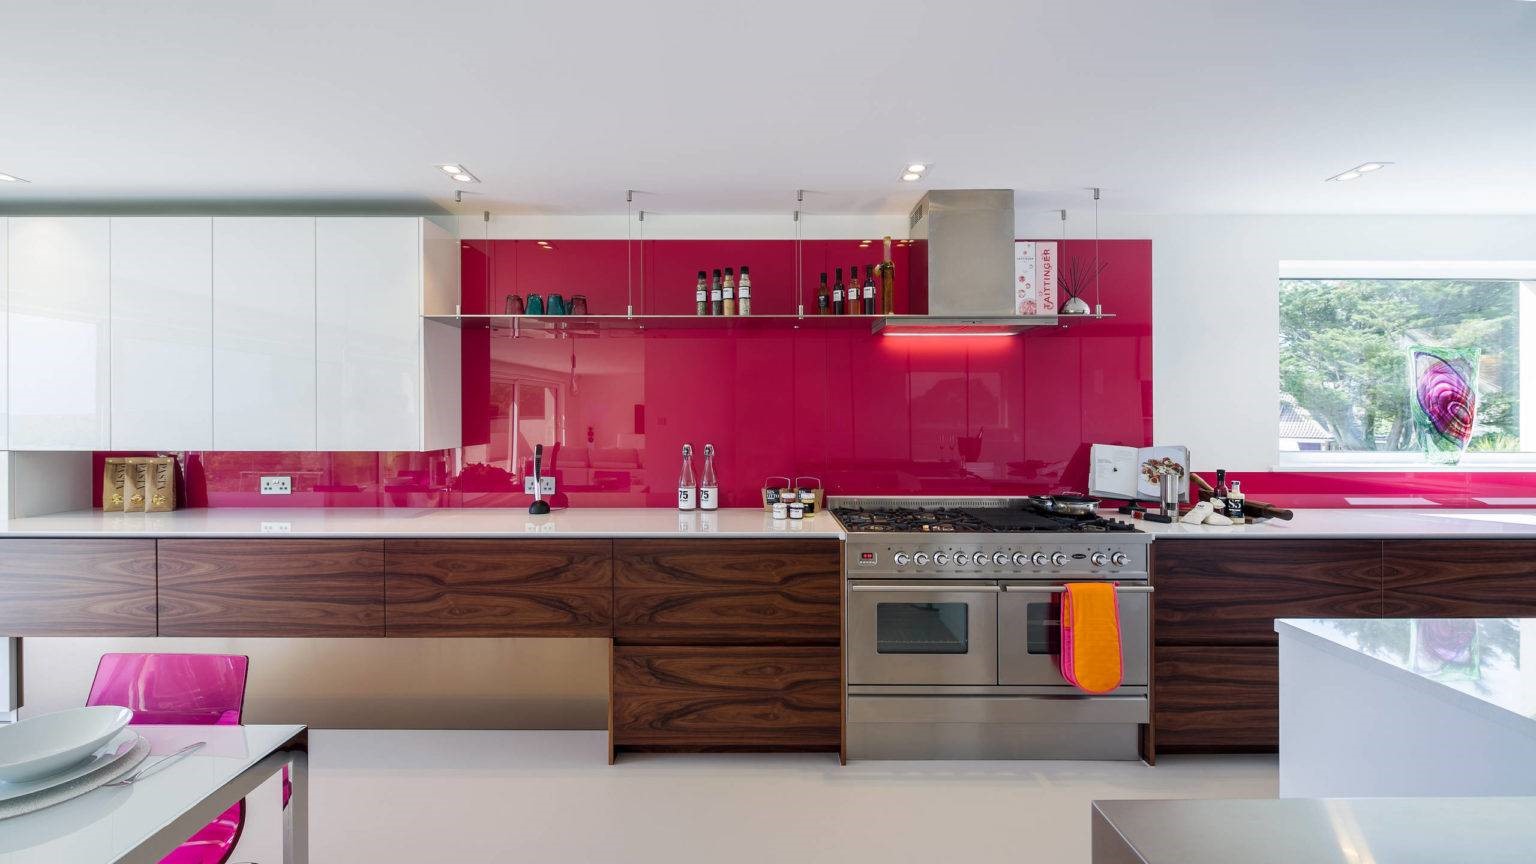 Màu hồng nóng bỏng là điểm nhấn táo bạo mà không kém phần quyến rũ cho không gian bếp 